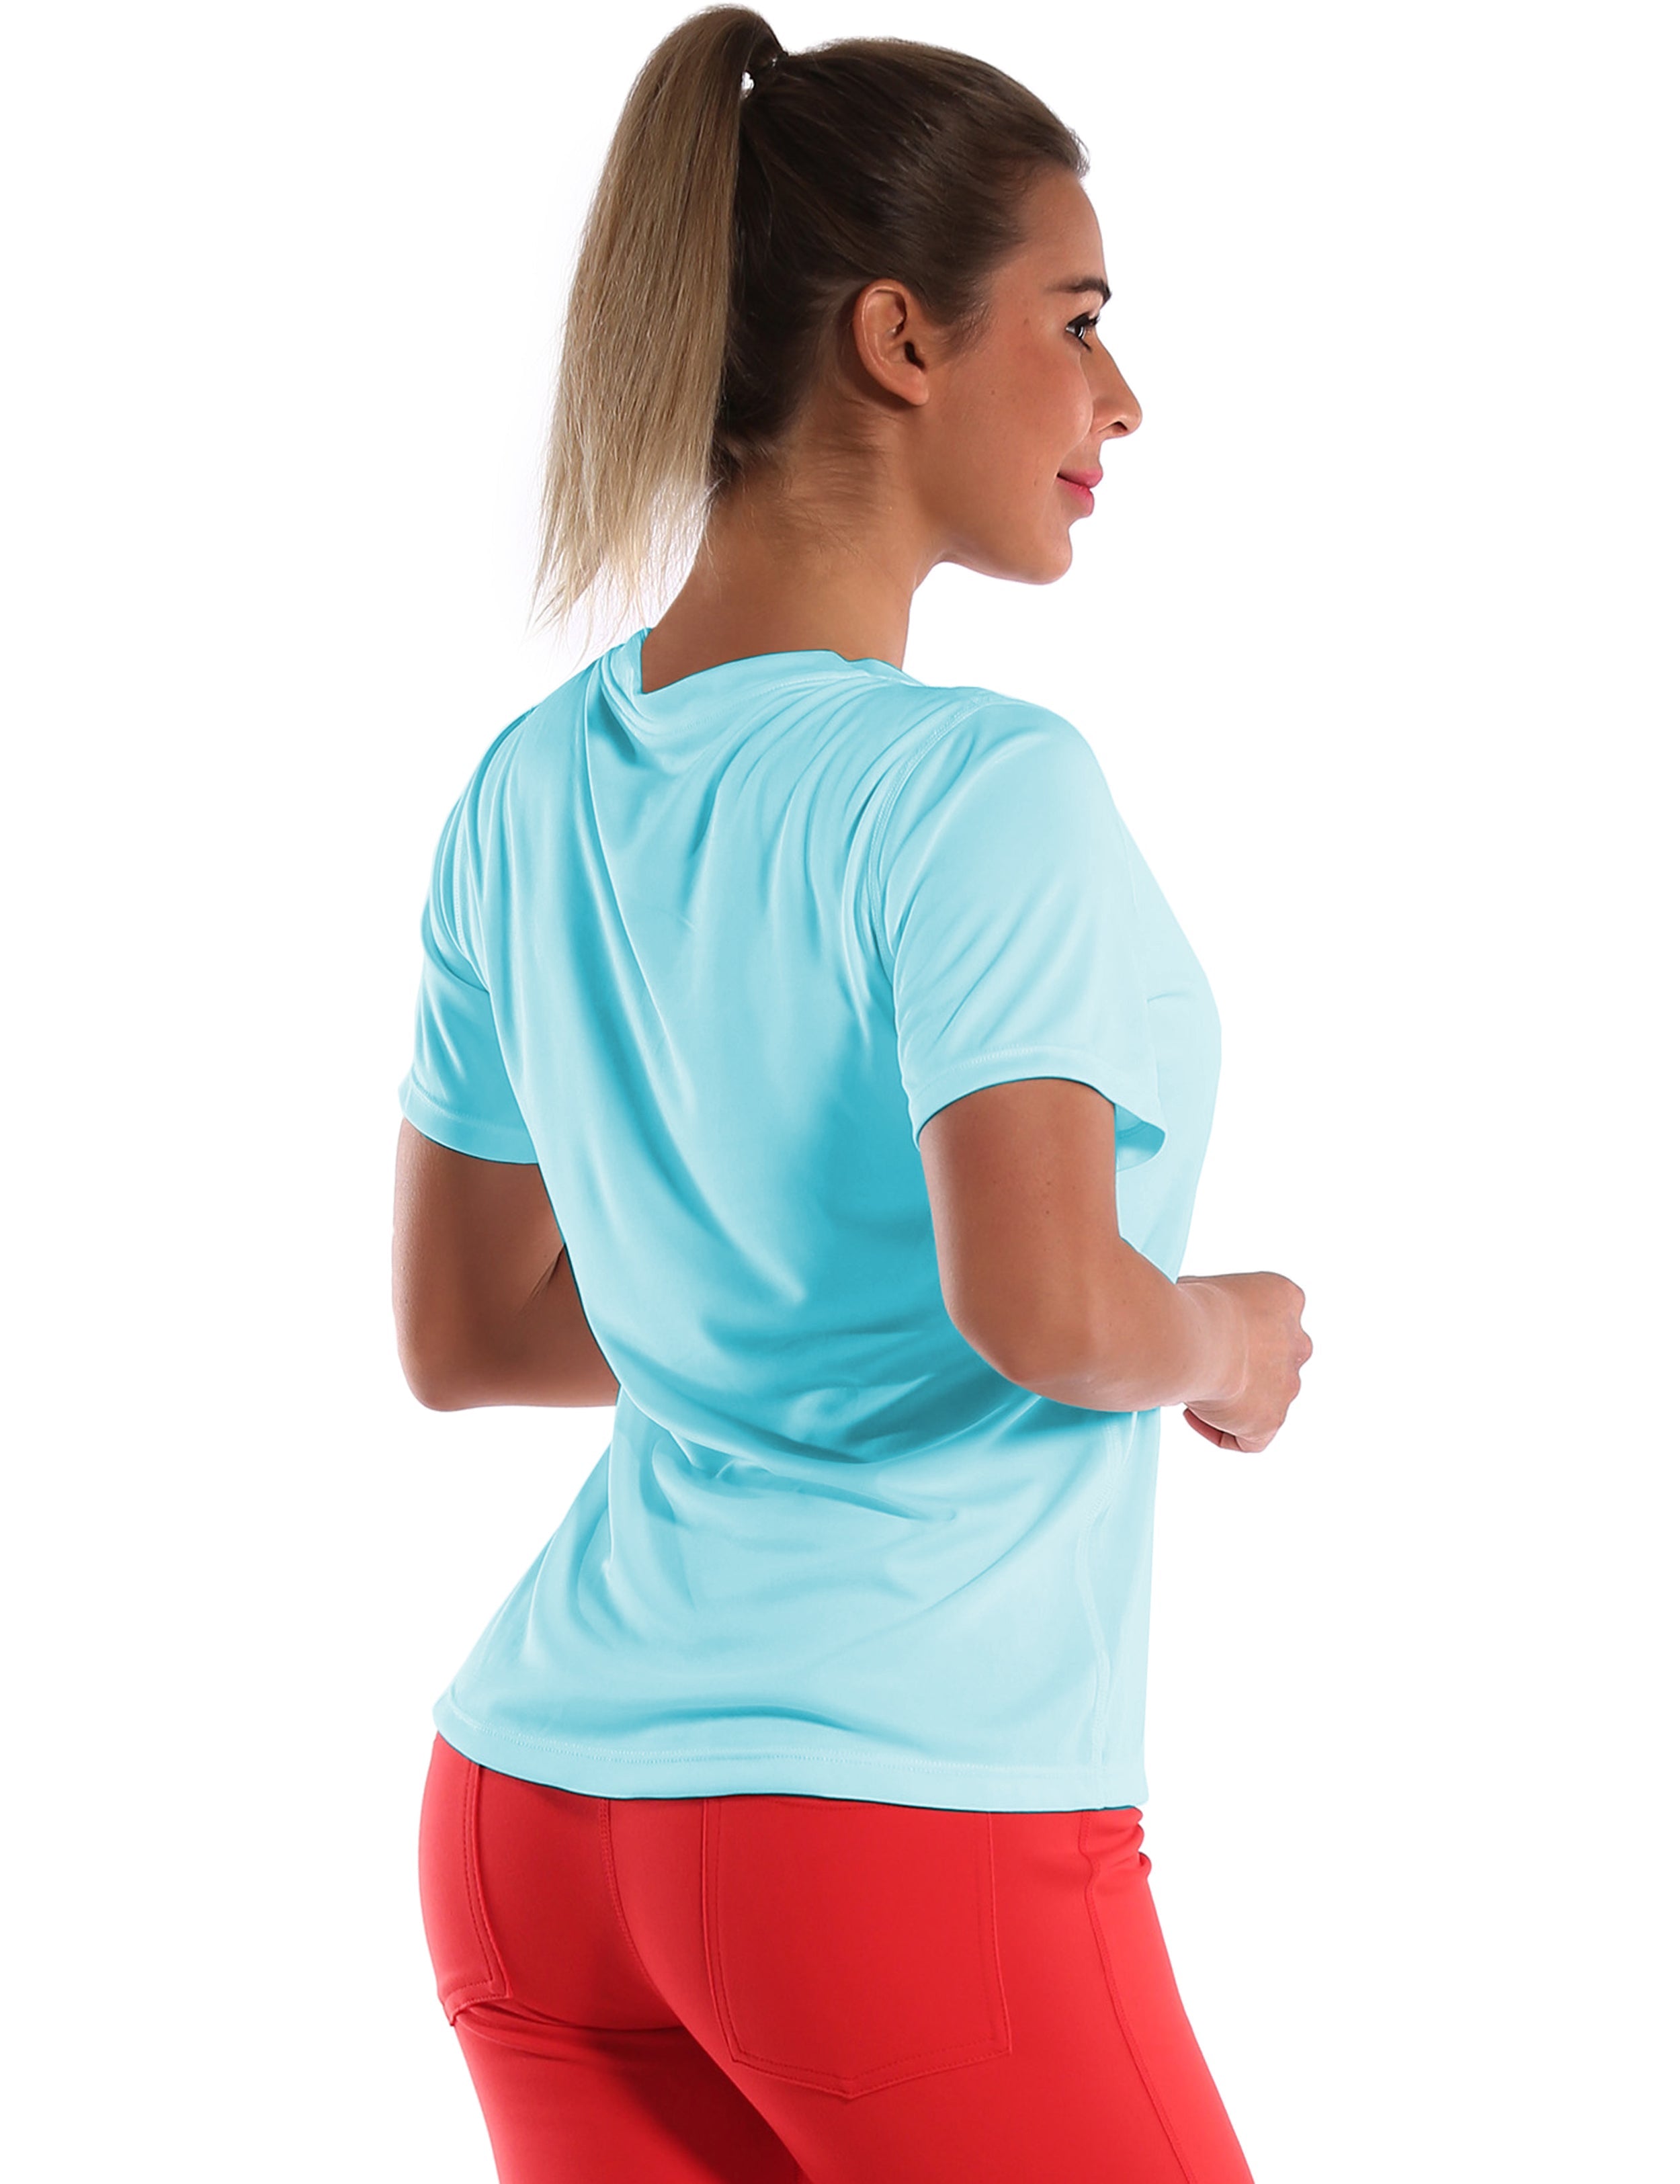 V-Neck Short Sleeve Athletic Shirts blue_yoga